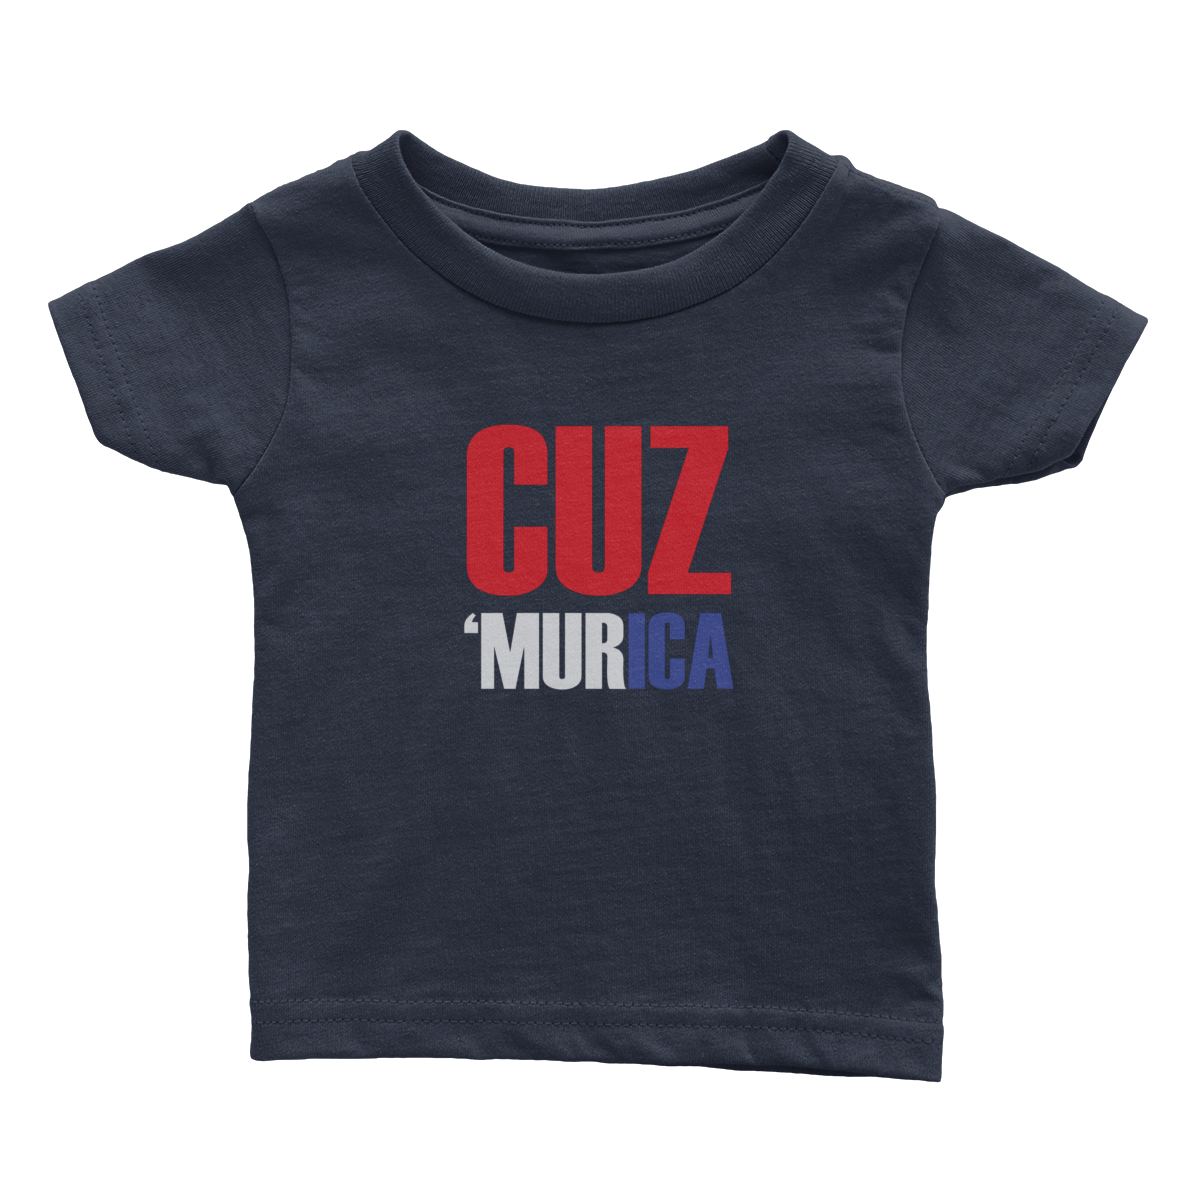 Apparel Premium Infant Shirt / Navy / 6 Months Cuz 'Murica - Rugrats